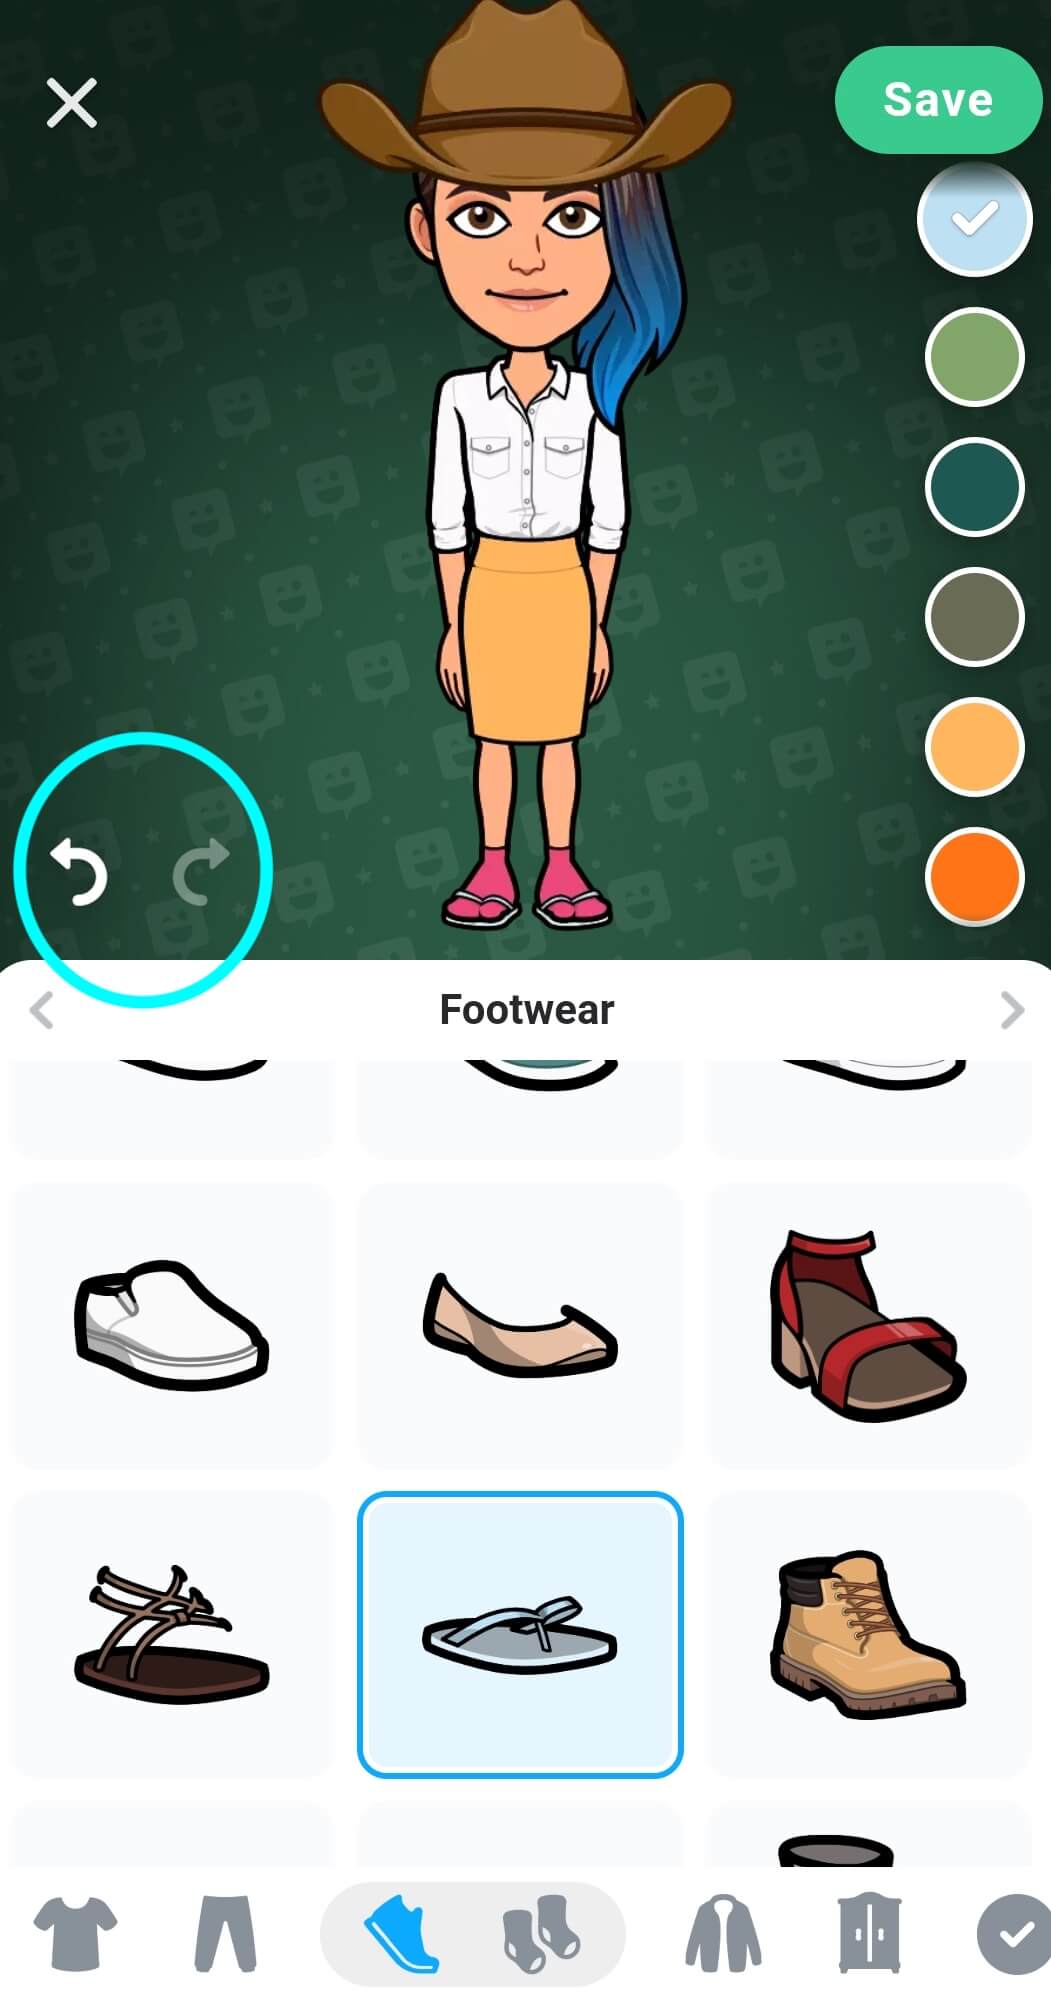 Los botones Deshacer y Rehacer aparecen destacados y se ubican en la parte central izquierda de la pantalla del Editor de avatares